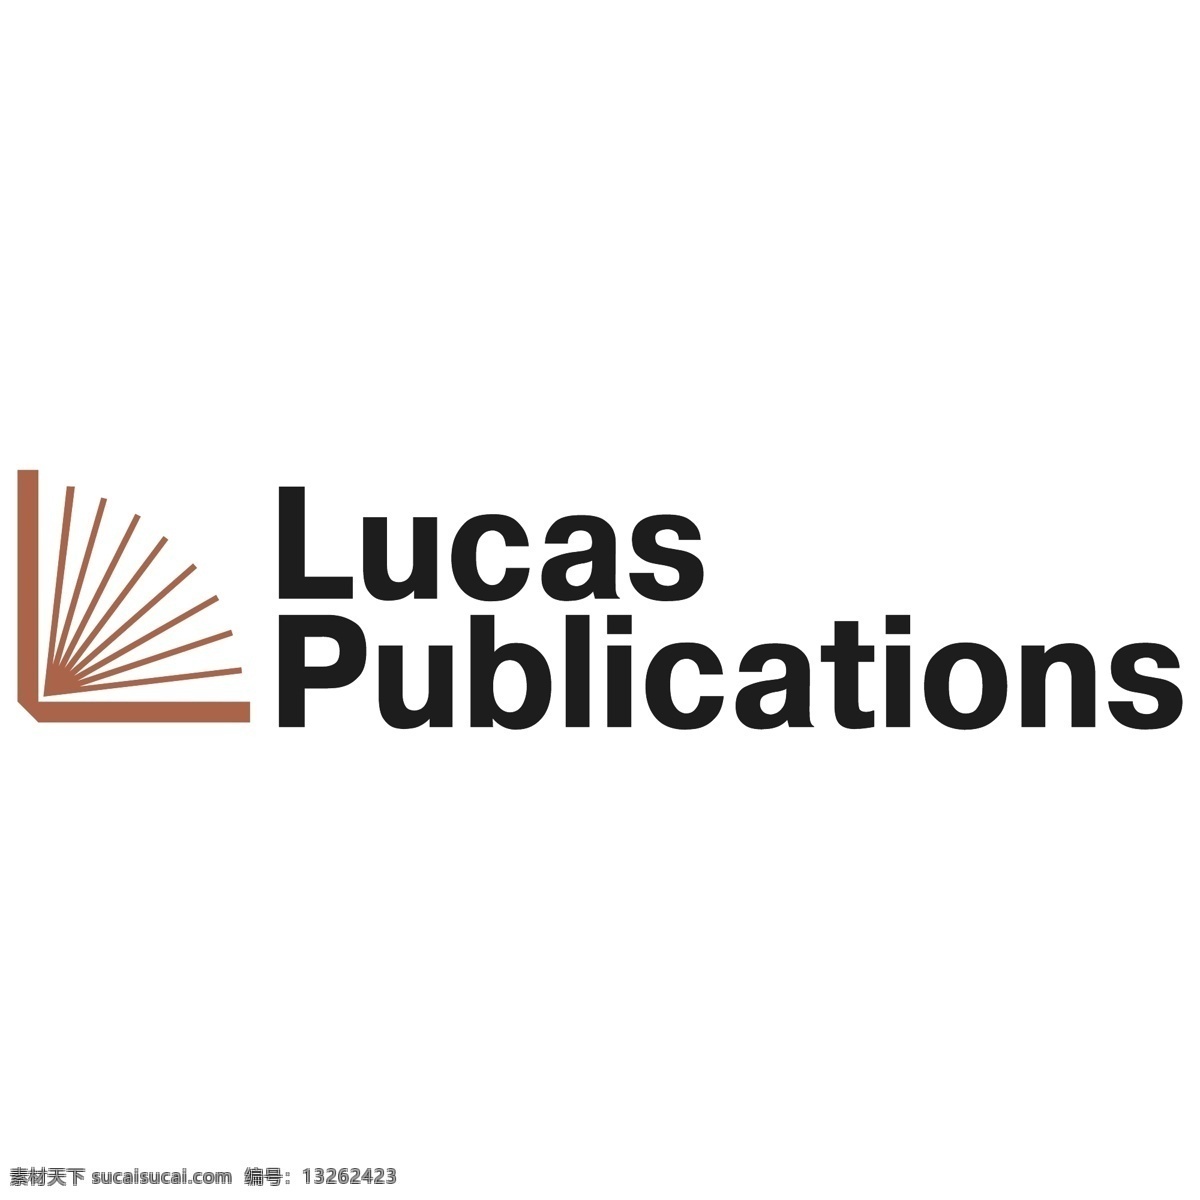 卢卡斯 出版物 自由 标识 psd源文件 logo设计